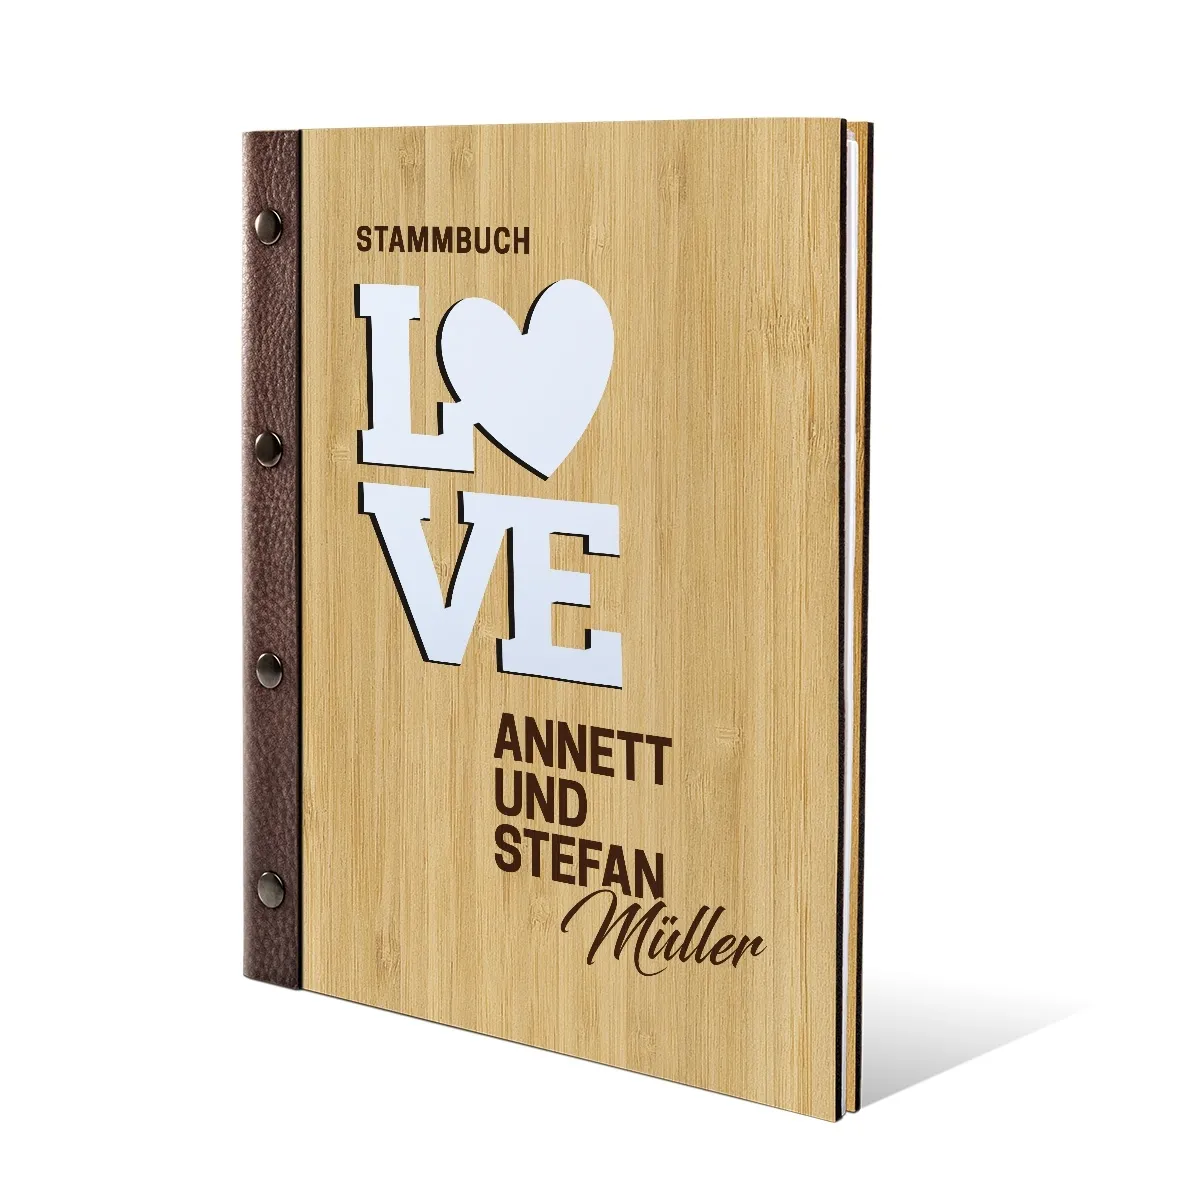 Personalisiertes Stammbuch Bambus Stammbuchformat - Love